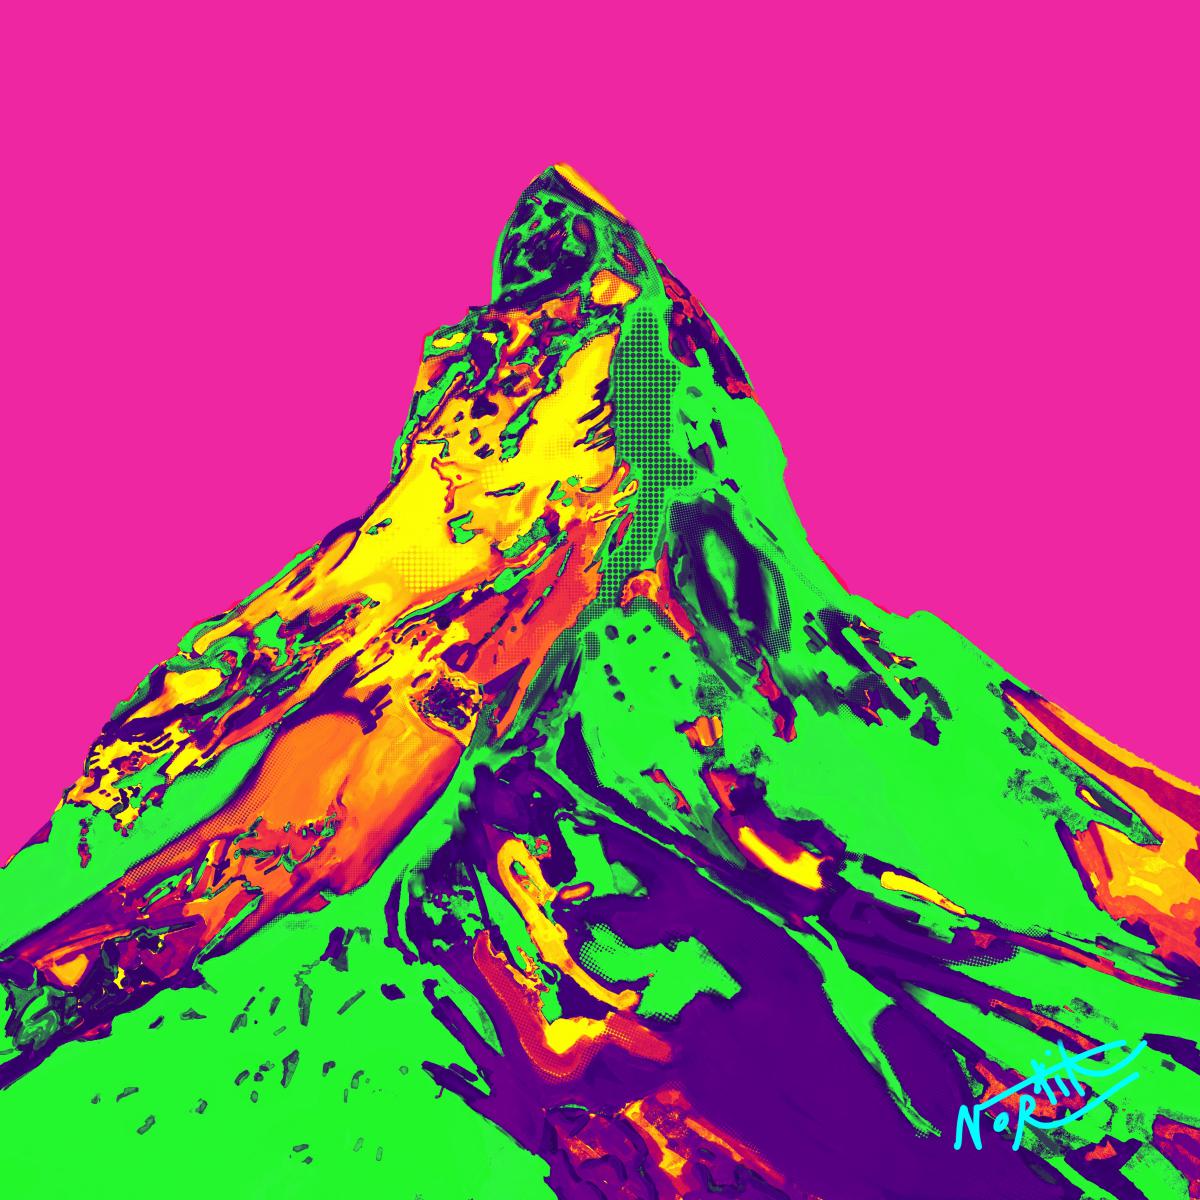 Montagne Suisse Pop-art- Robert Nortik